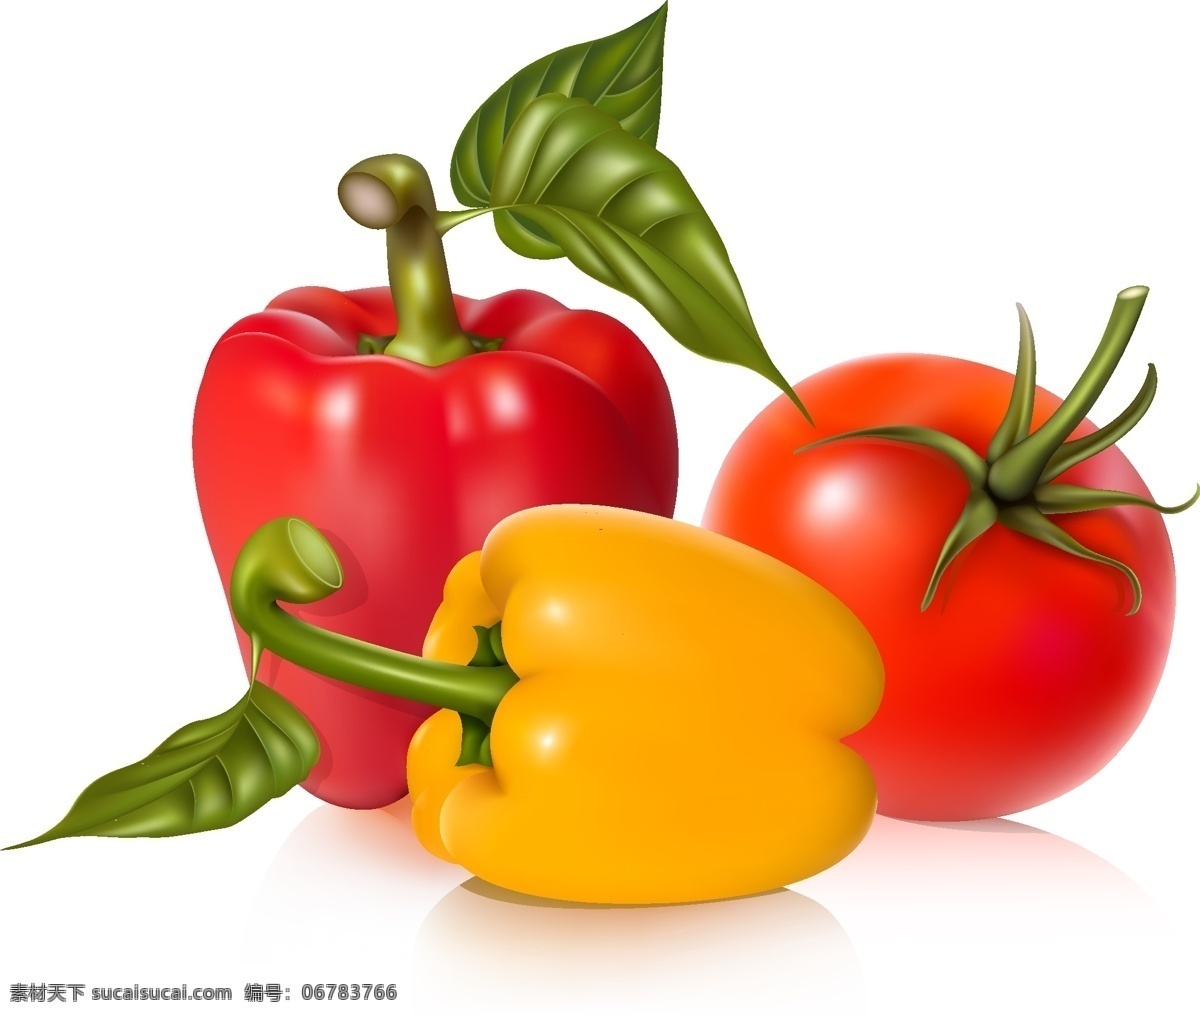 新鲜 蔬菜 矢量图 番茄 矢量素材 矢量图库 西红柿 新鲜蔬菜 叶脉 柿子椒 日常生活